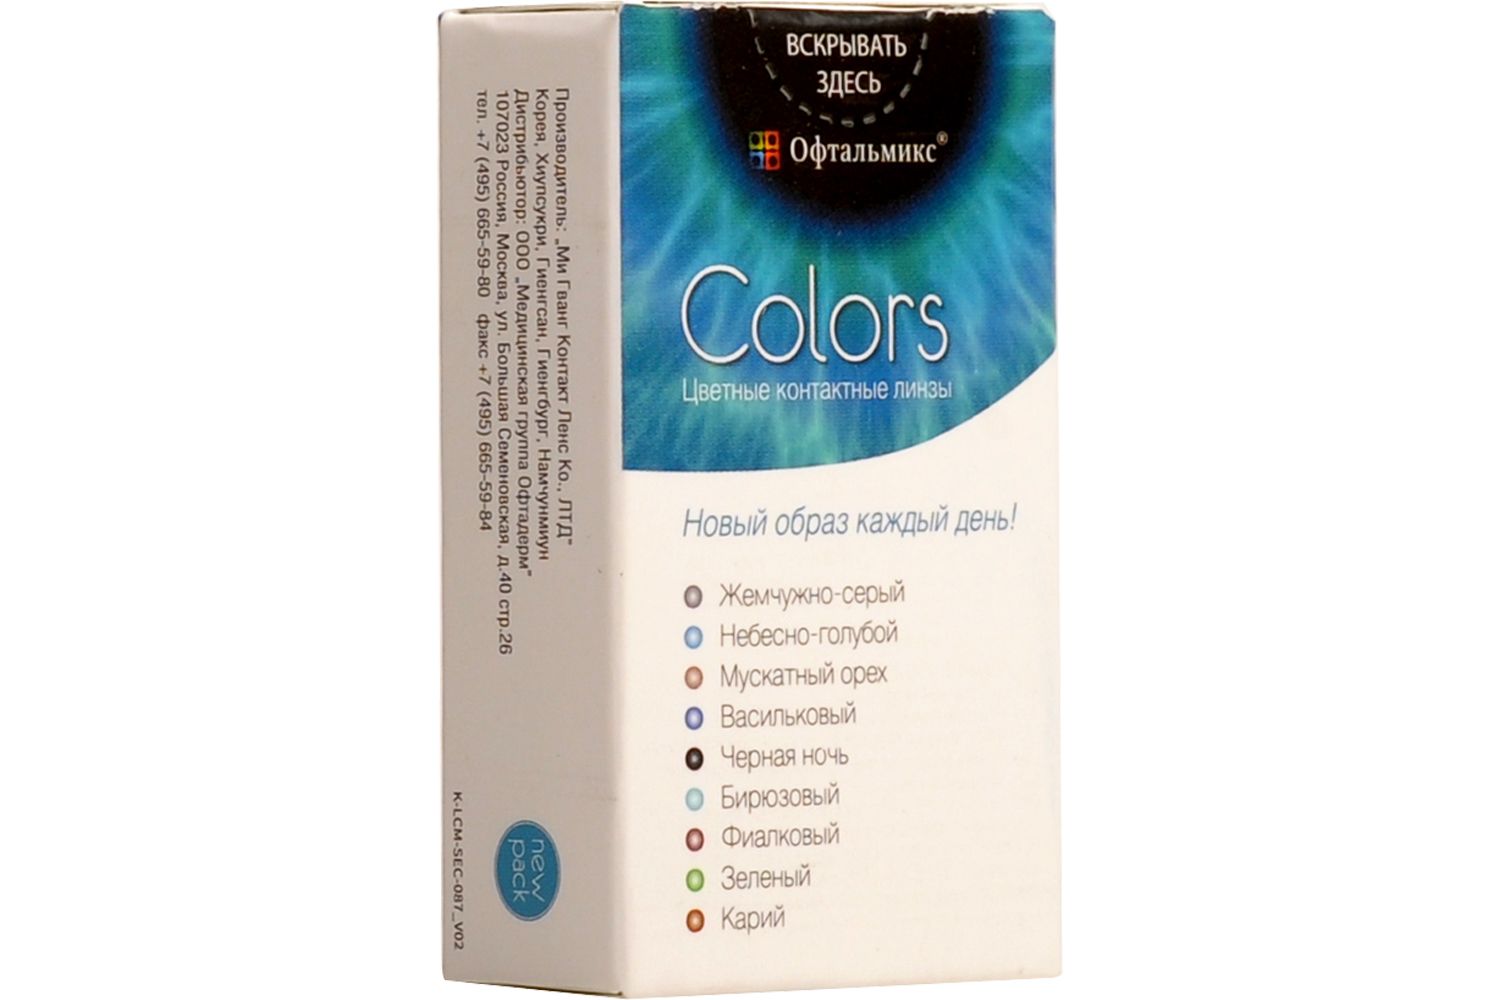 Купить Colors 2 линзы, Цветные контактные линзы Офтальмикс Colors, 2 шт. PWR -6, 00, R 8.6, Cloud